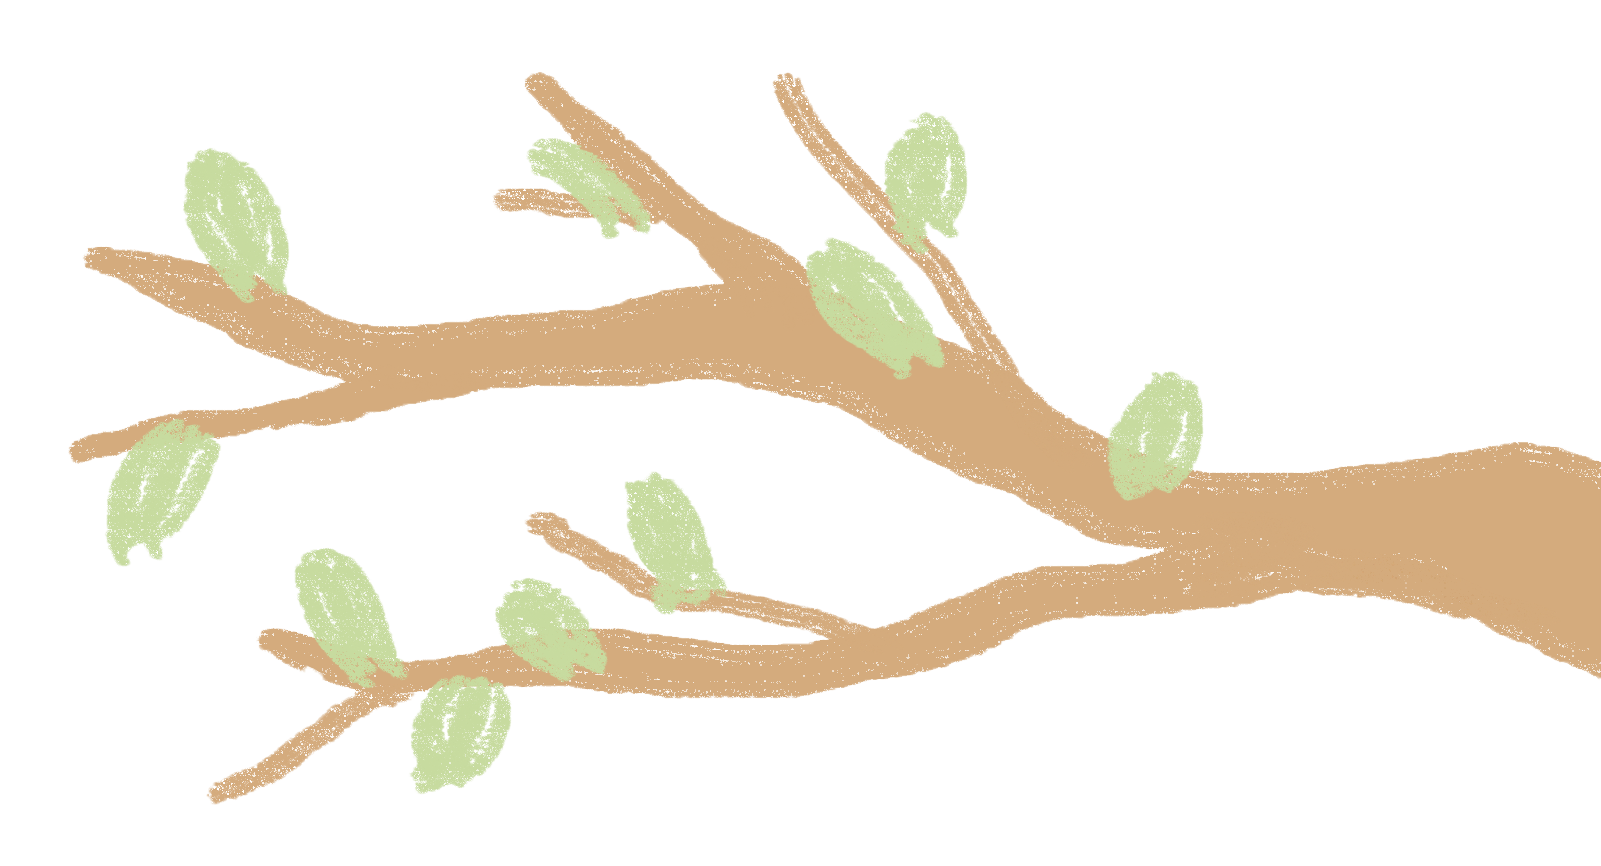 Tree branch illustration